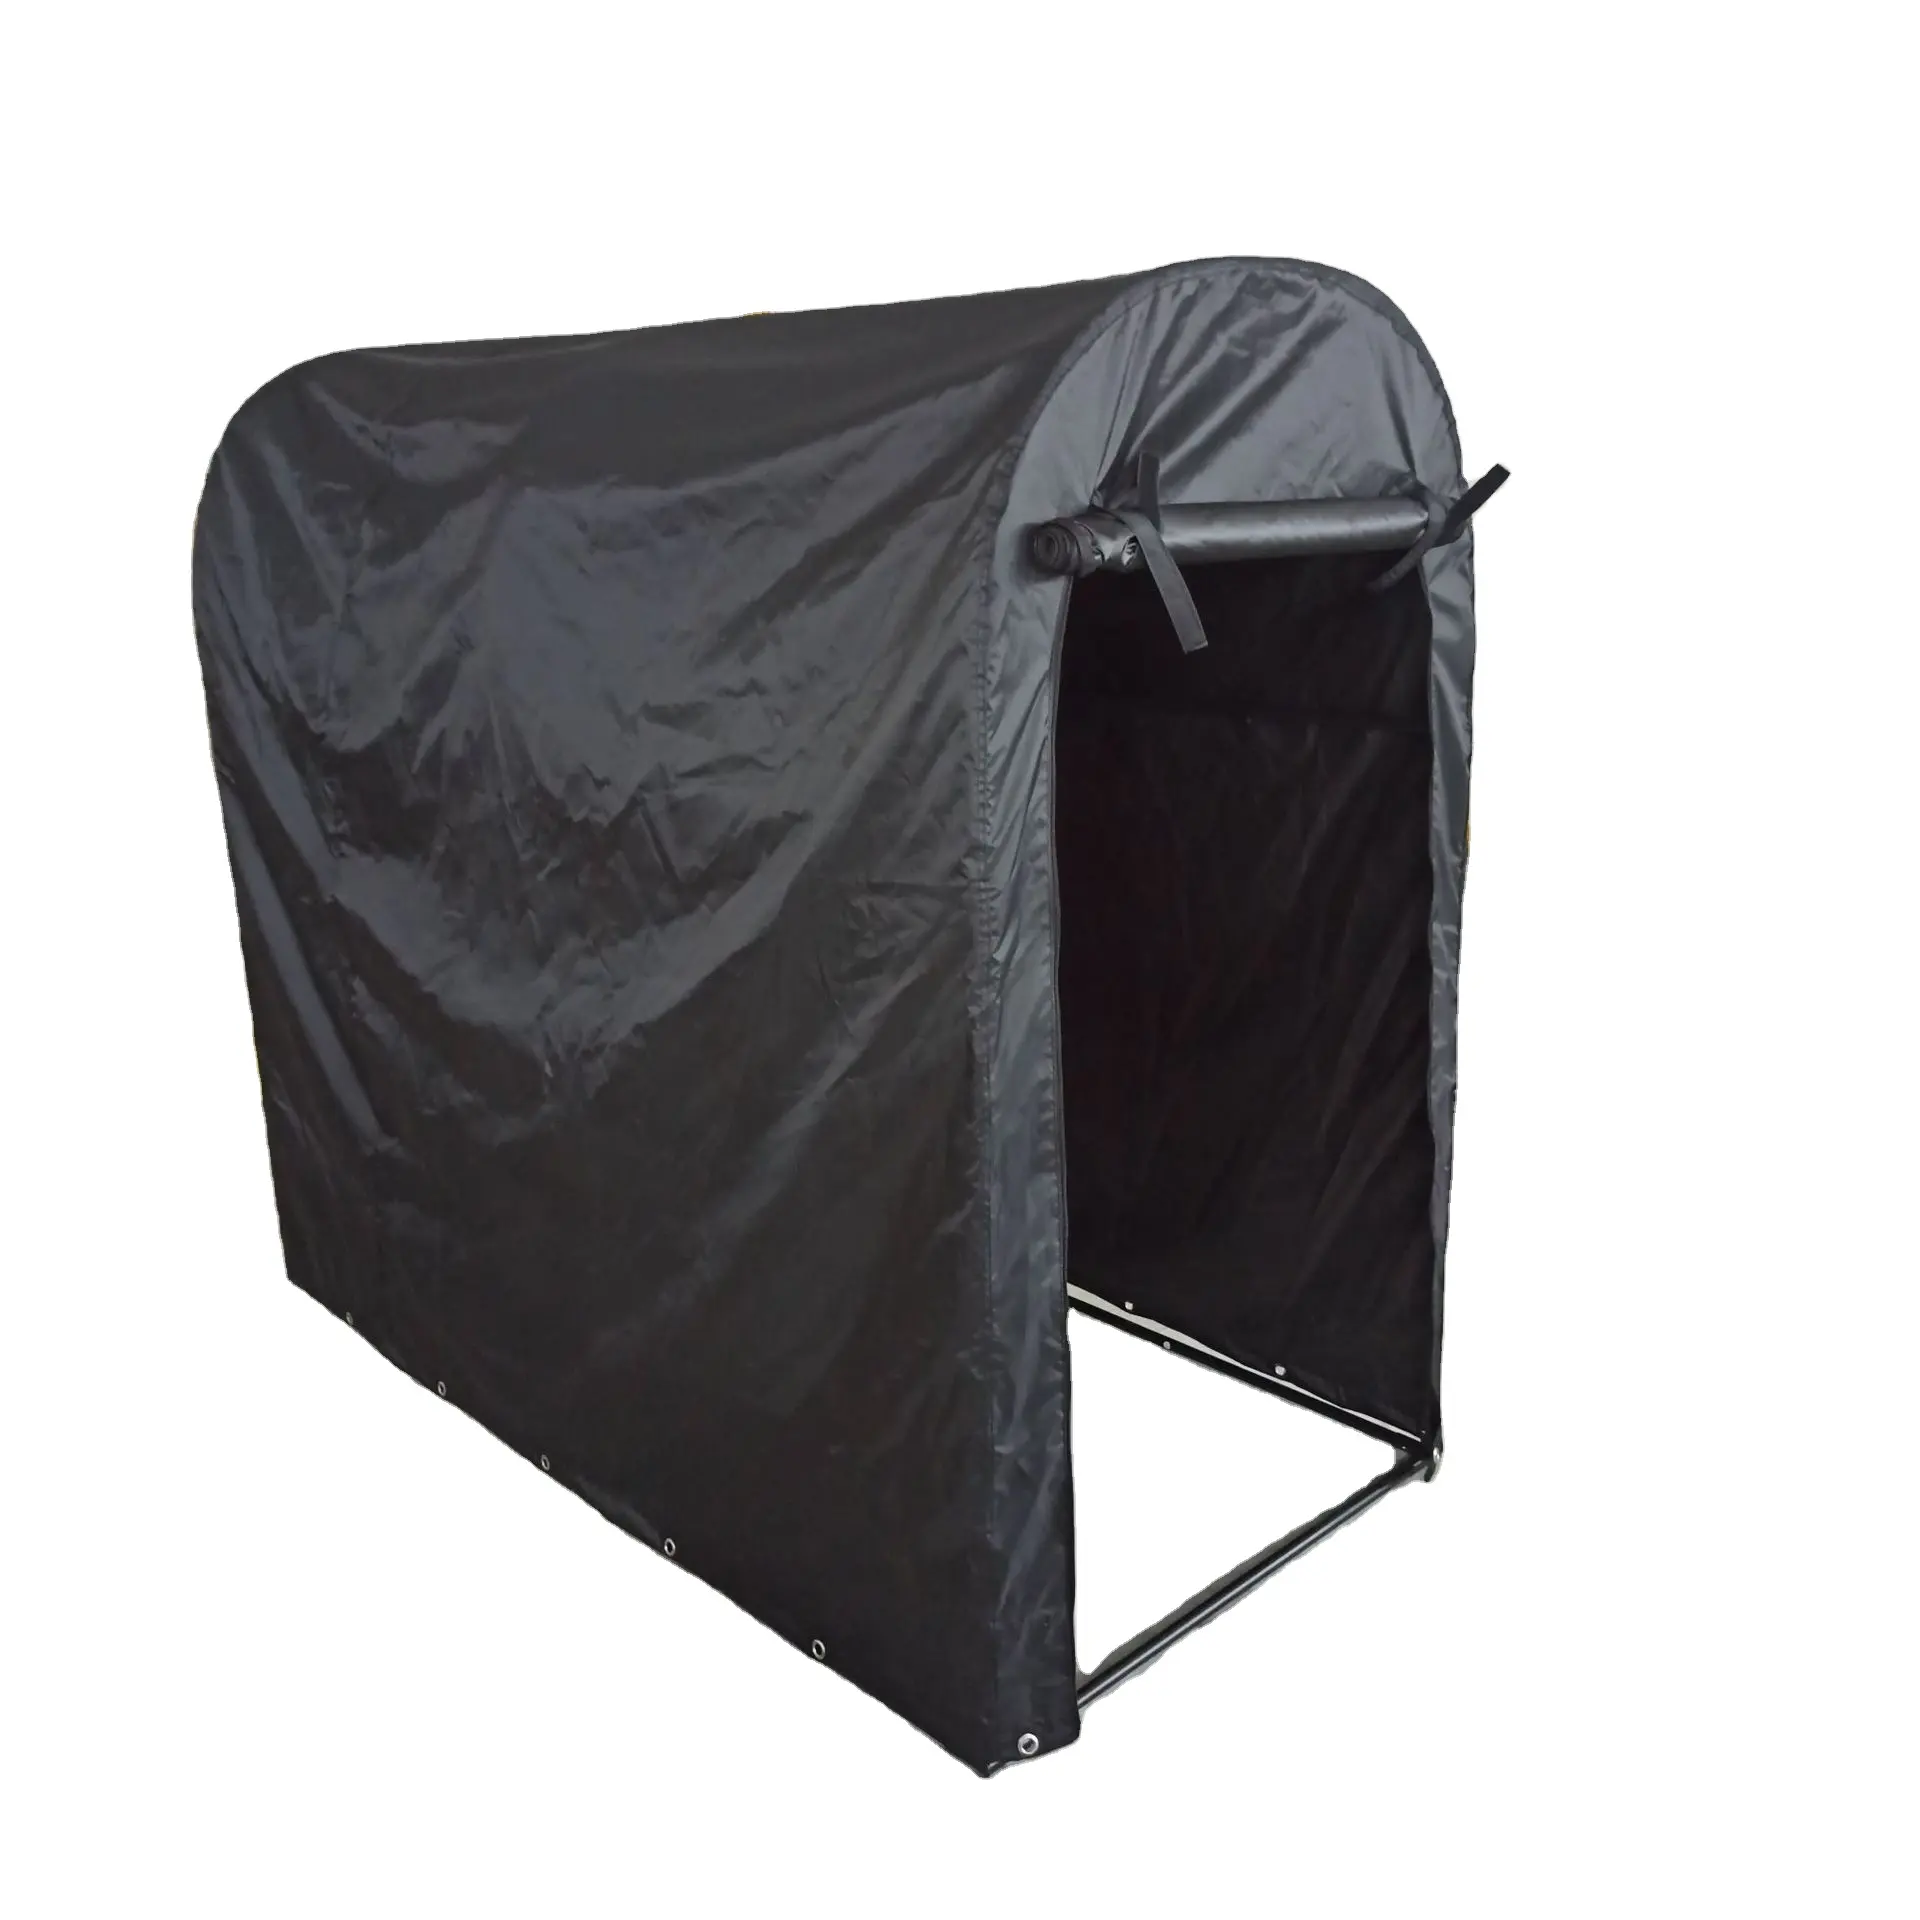 Neues Design Außenfahrrad-Aufbewahrungszelt Oxford wasserdichte Abdeckung Schuppen für Camping Fahrradunterstand